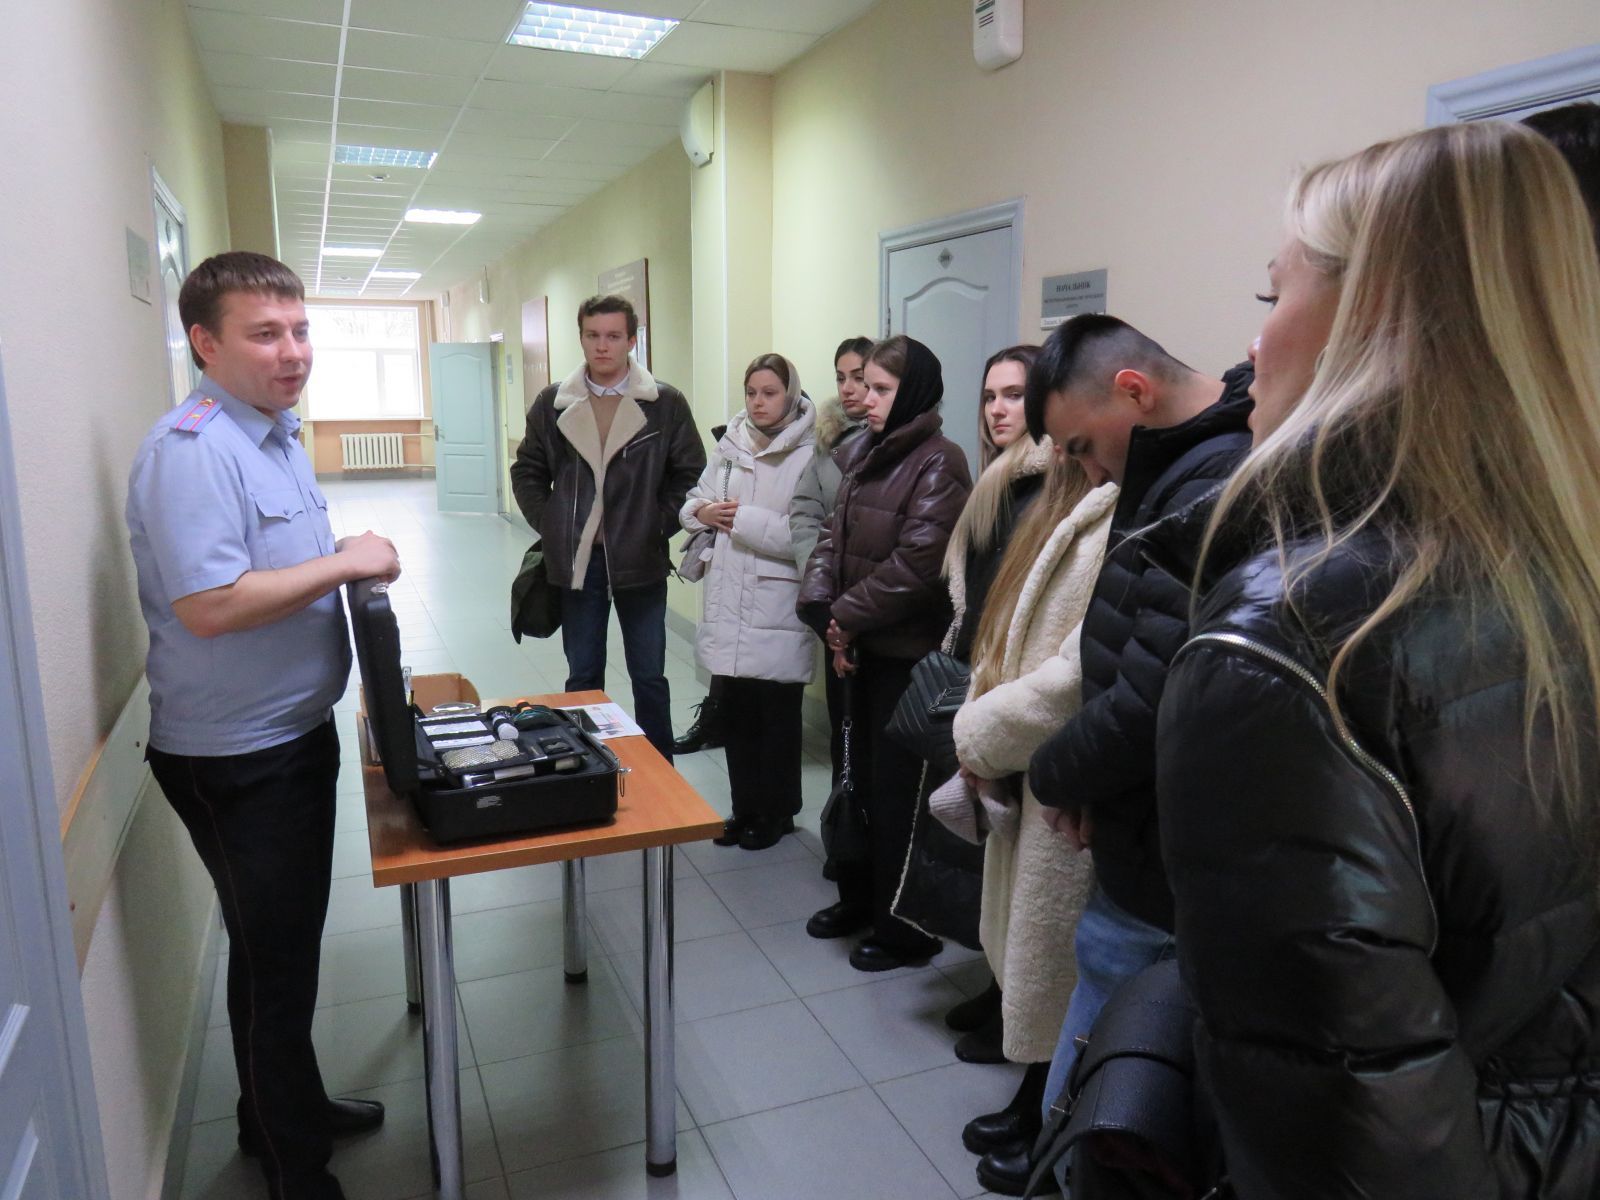 В Управлении Министерства внутренних дел Российской Федерации по Ульяновской области состоялся День открытых дверей для студентов юридических факультетов